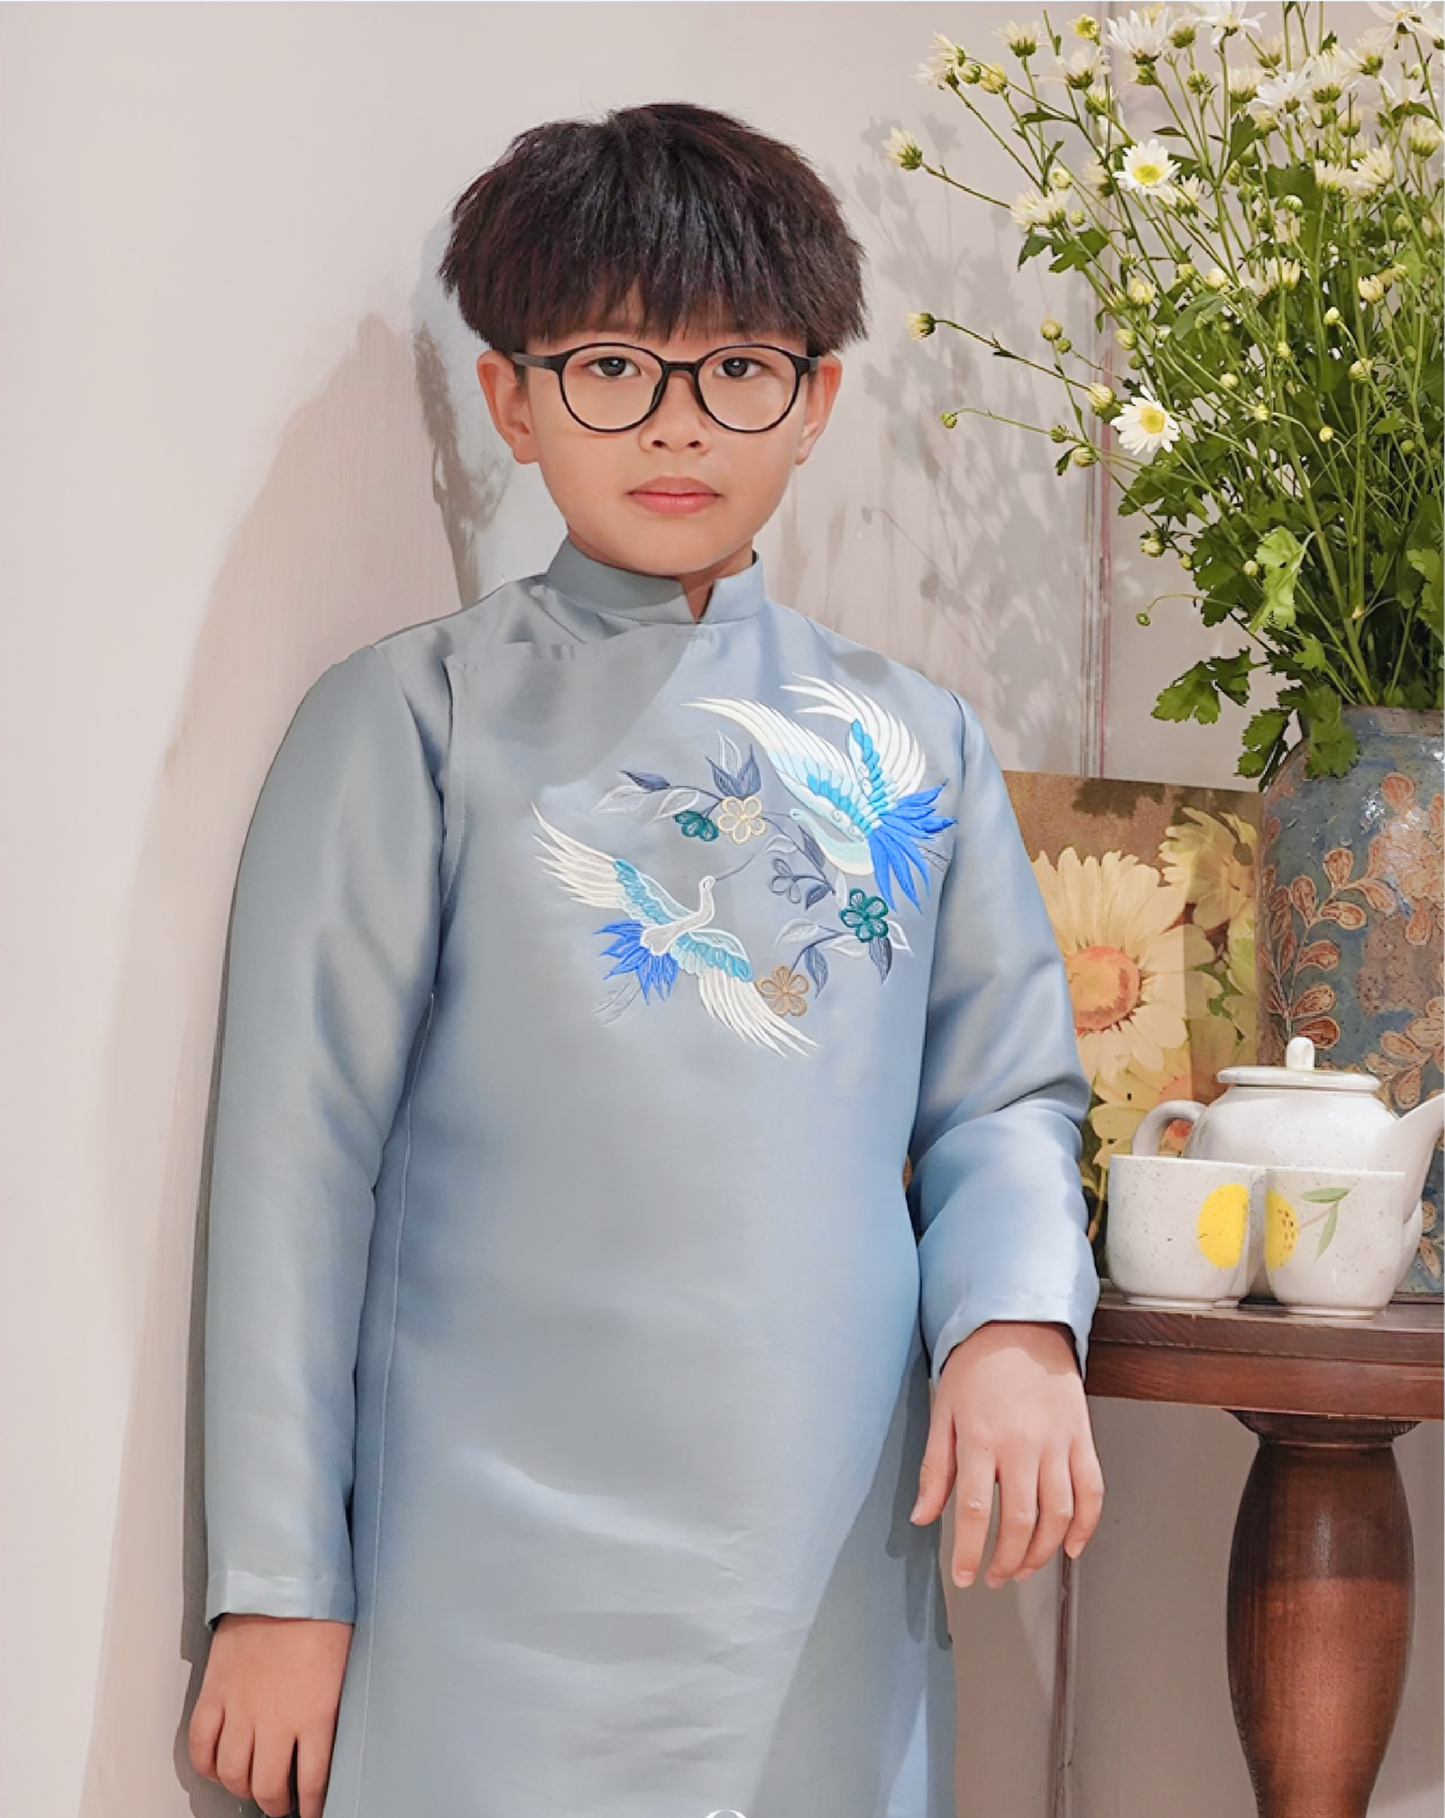 762 - Boy’s Áo Dài Thanh Vân Light Blue (Family Ao Dai)